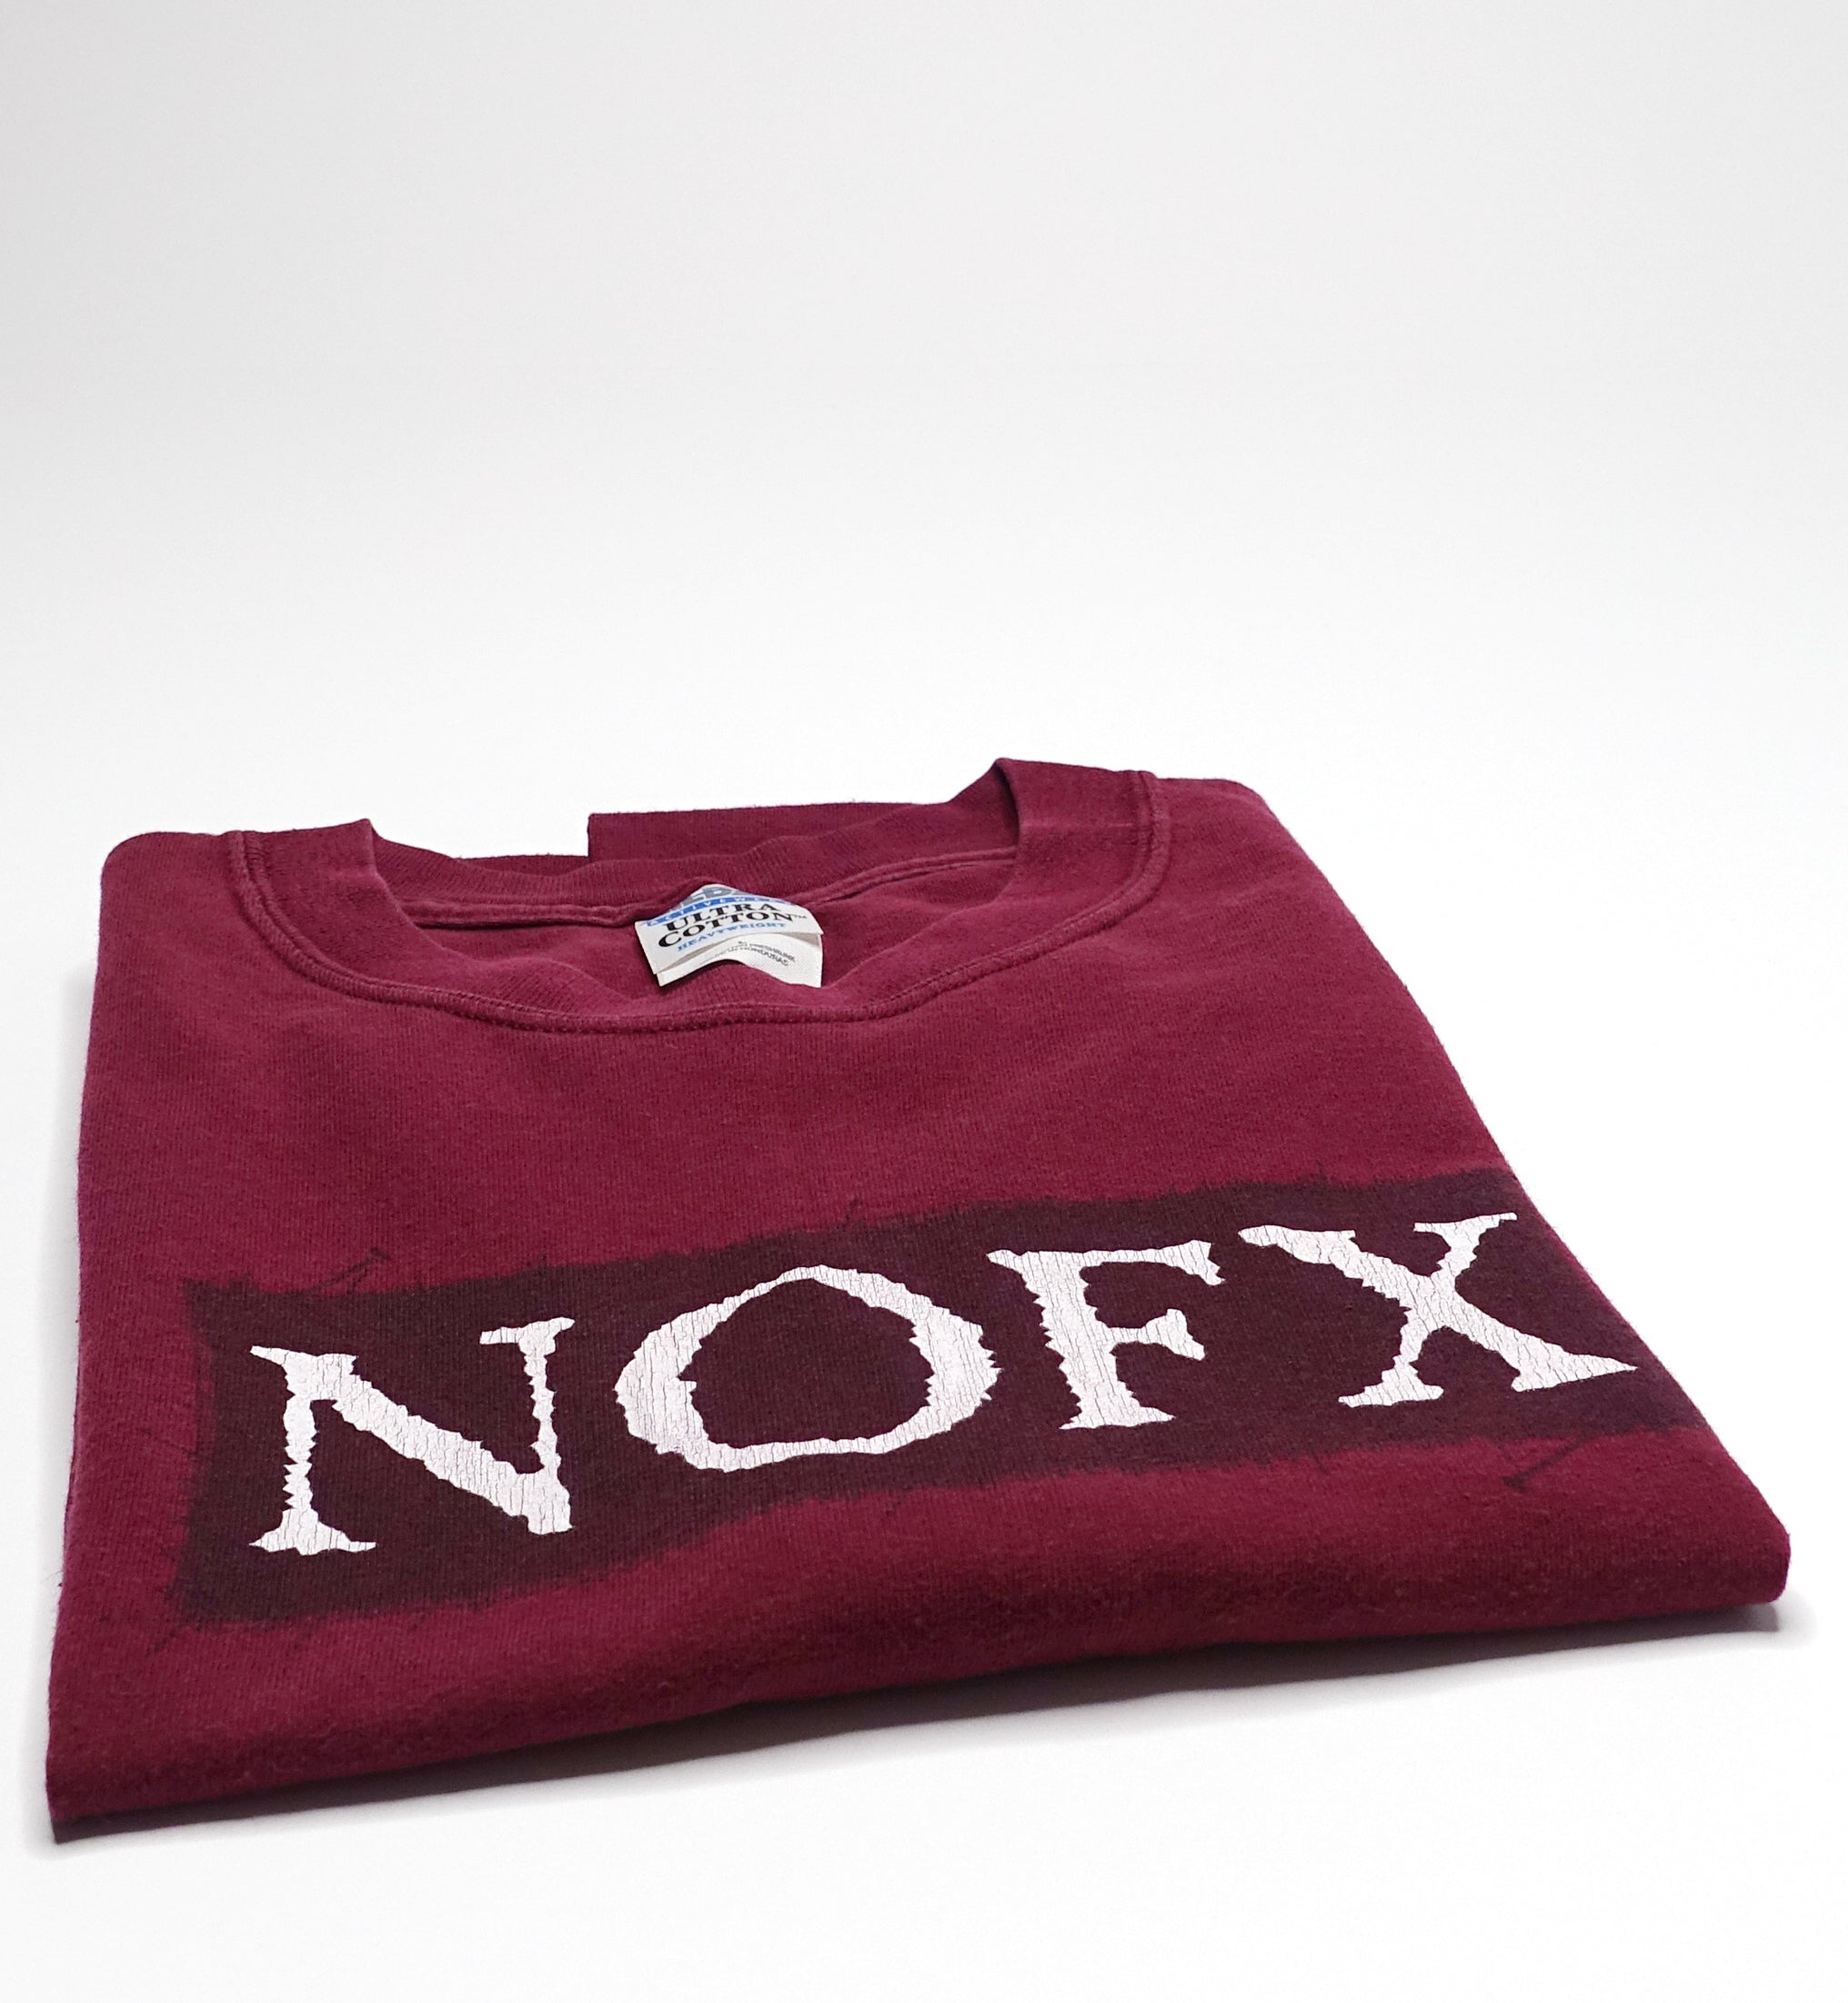 NOFX - 1998 Warp Tour Shirt Size Large